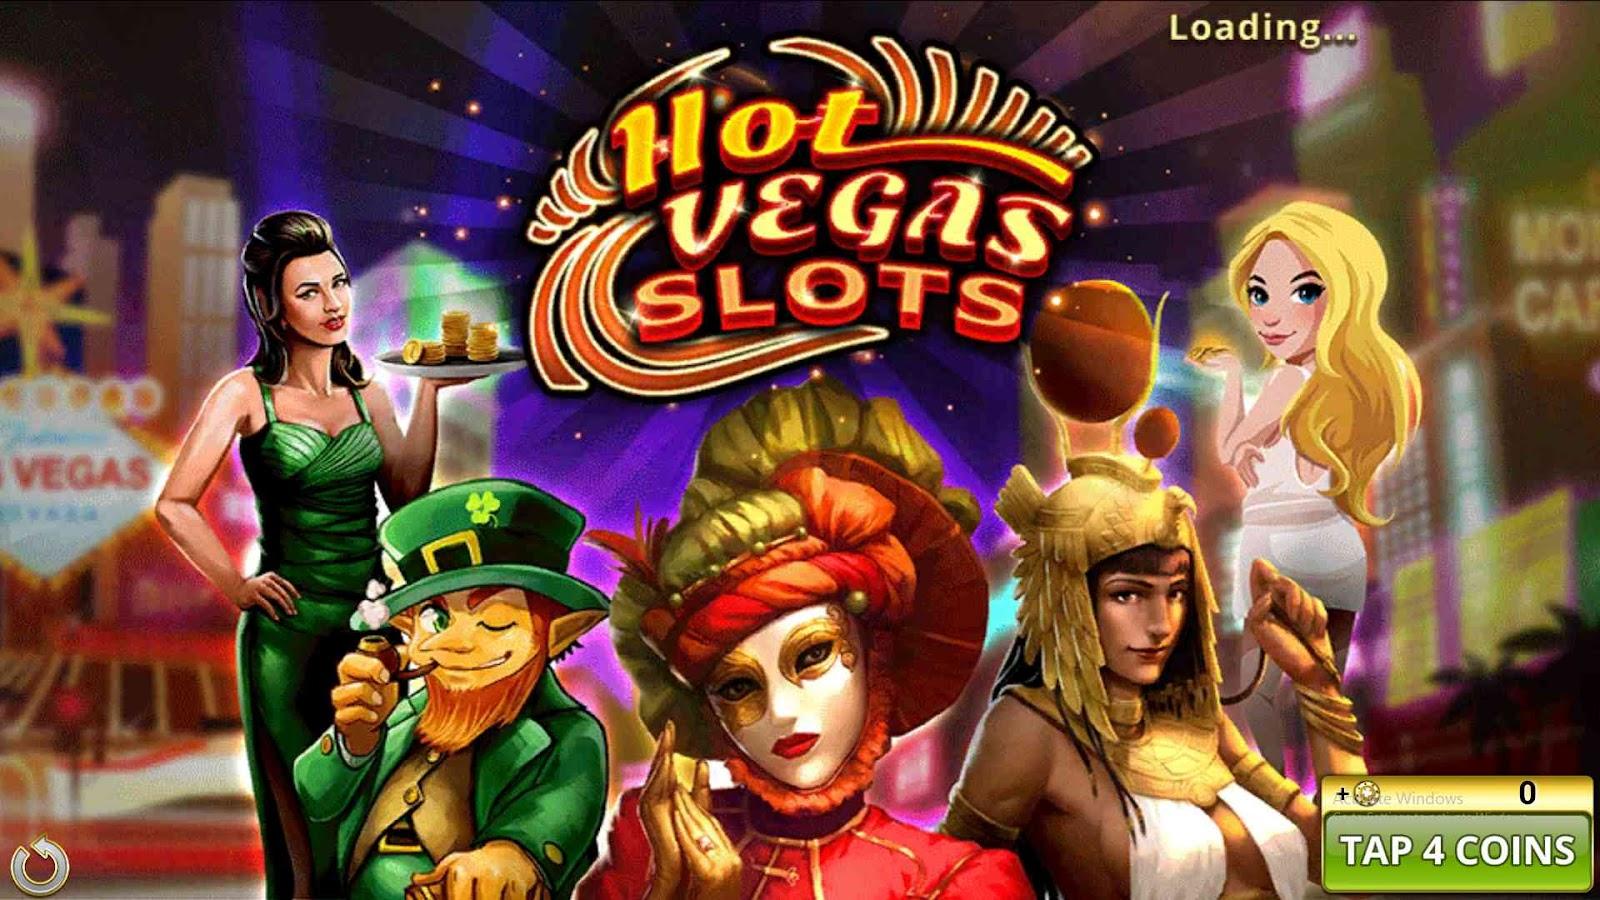 Hot Vegas Casino Slot Machines